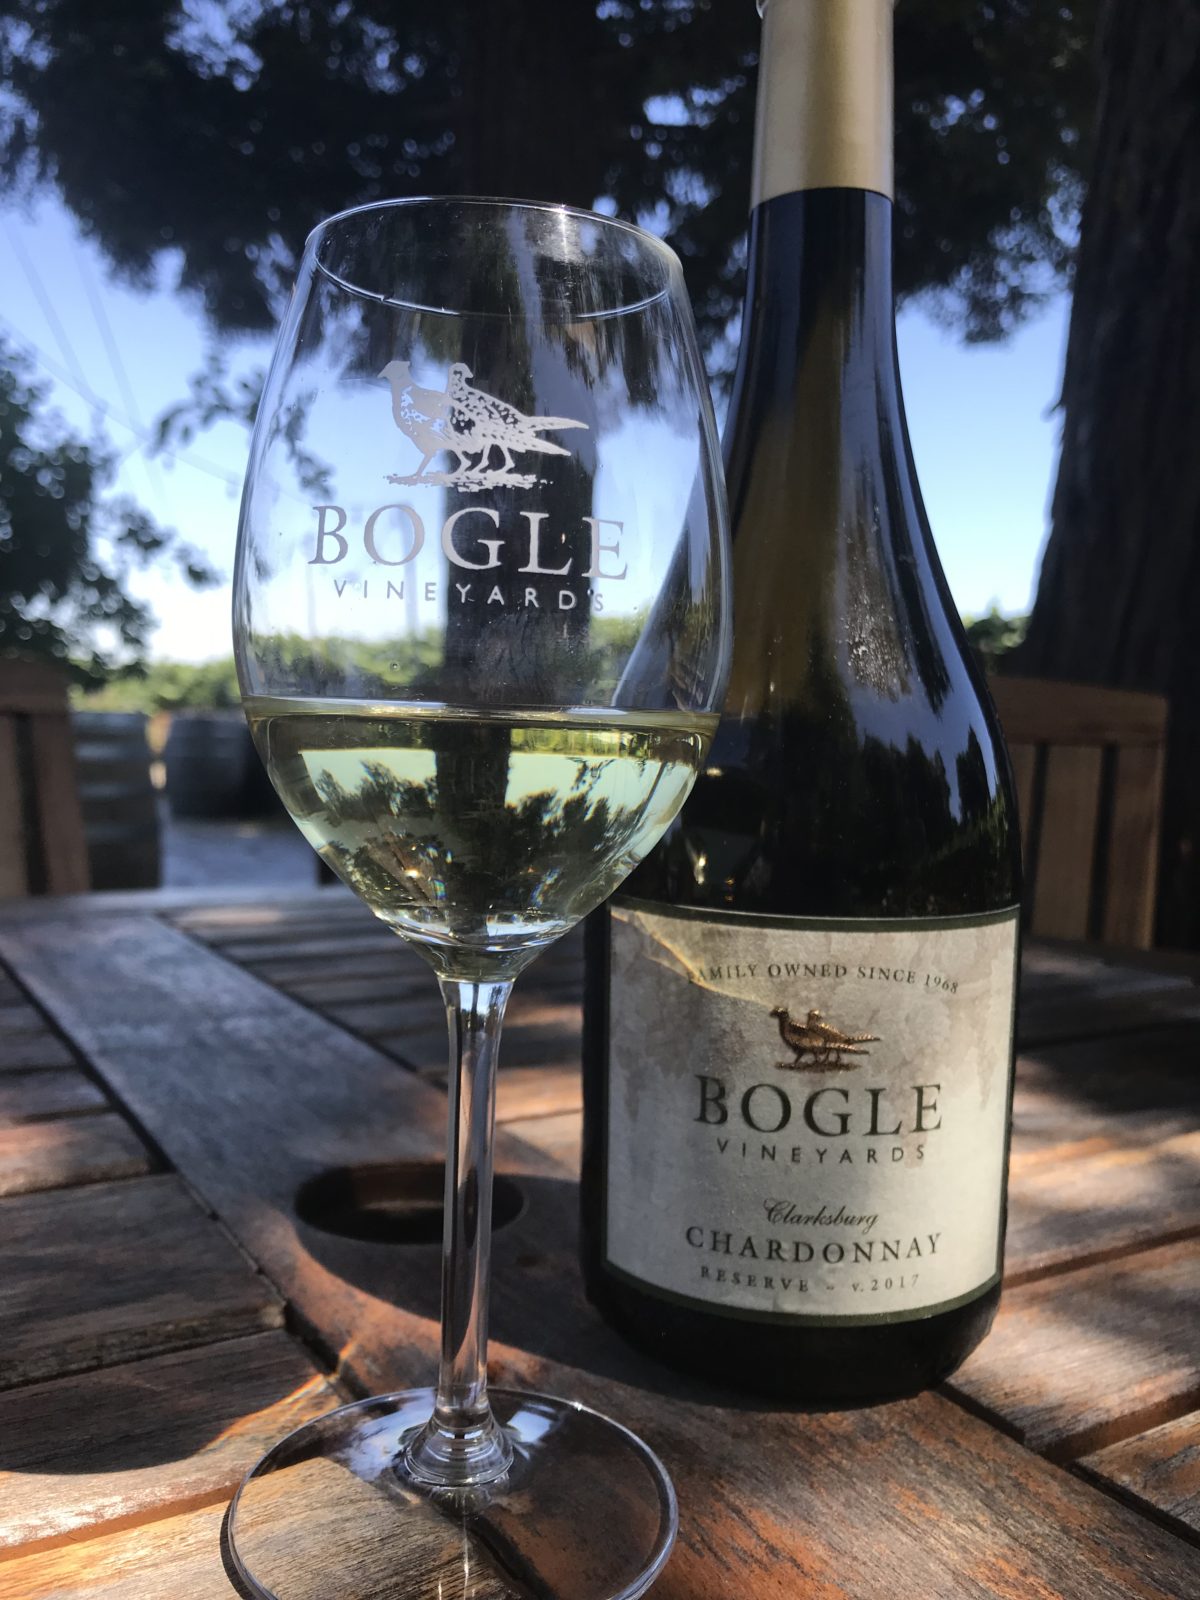 A glass of Bogle Reserve Chardonnay